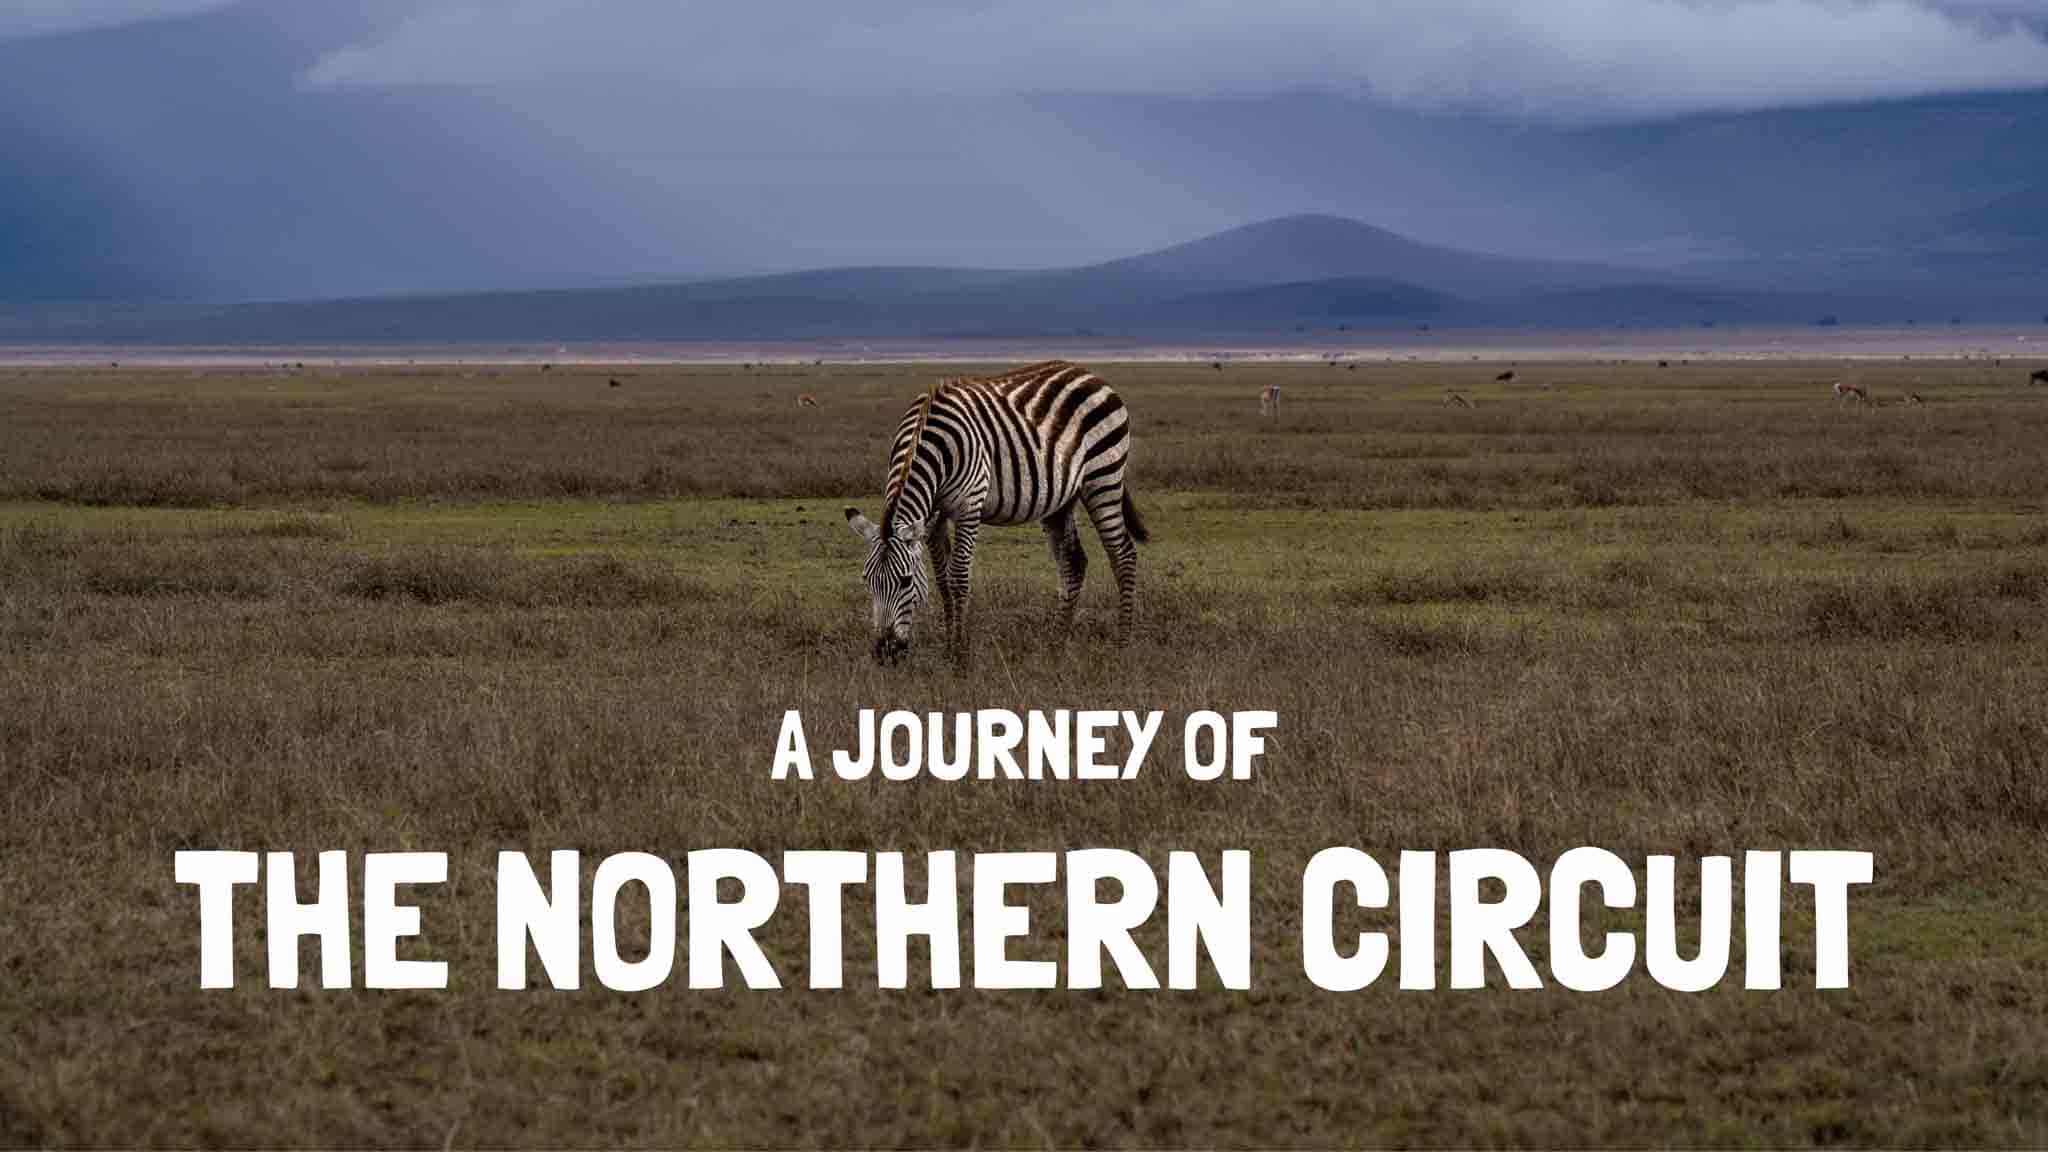 northern circuit safari tanzania